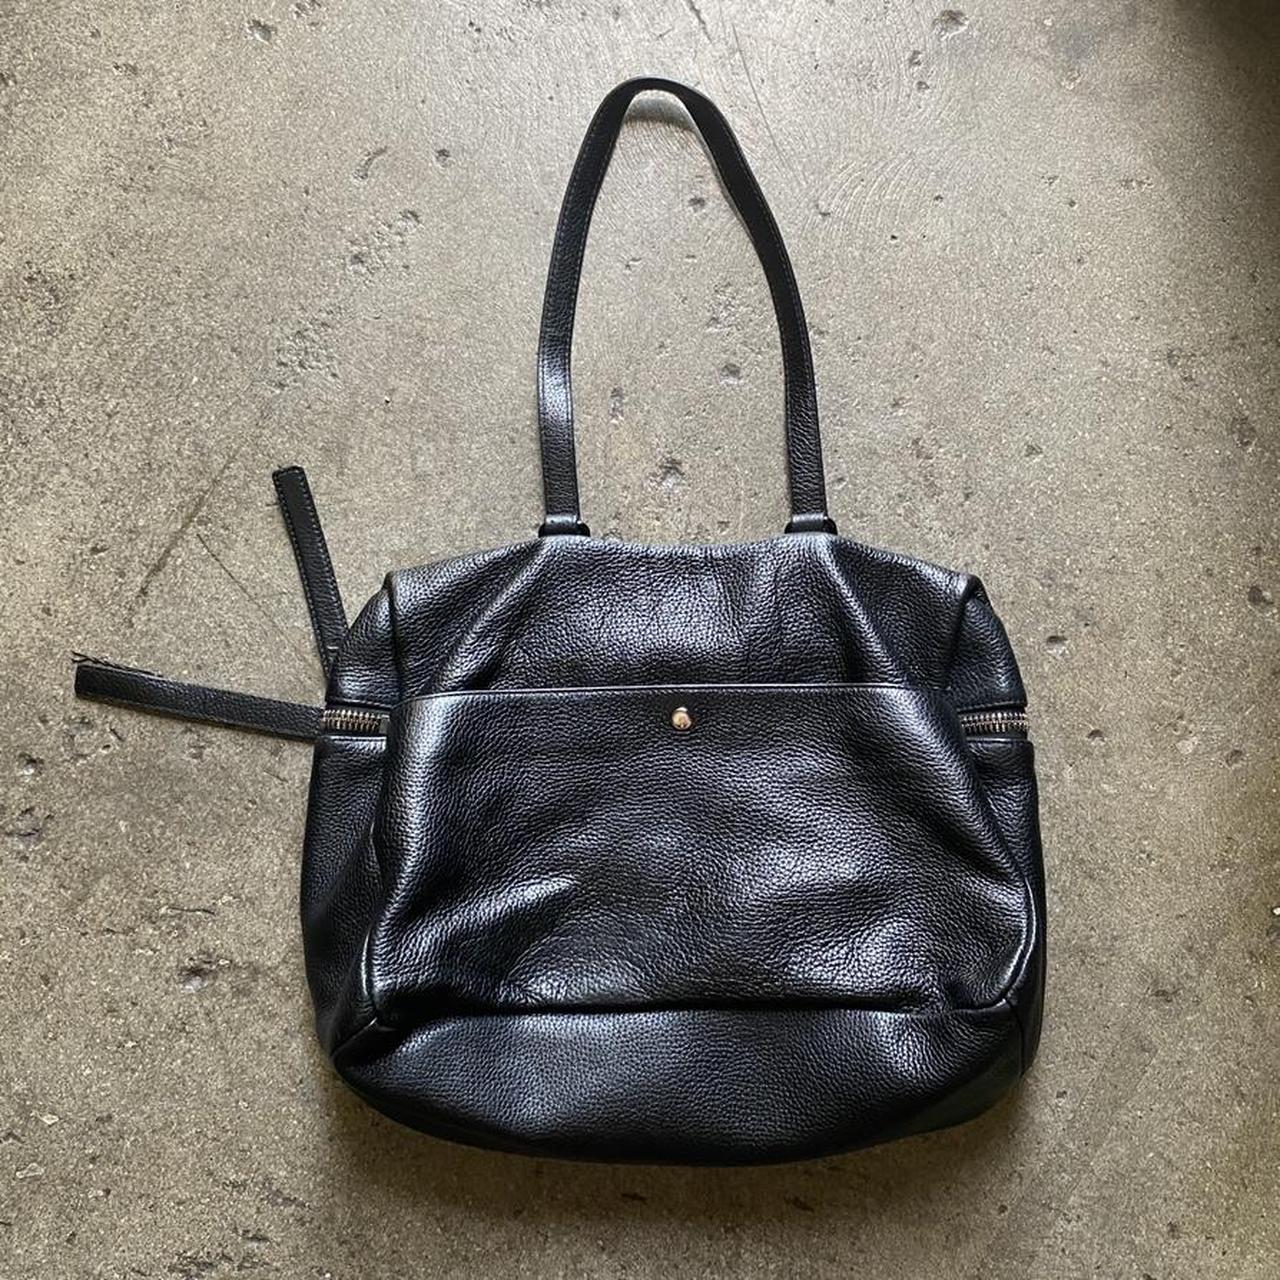 Product Image 2 - Black Kara Shoulder Bag, pebbled